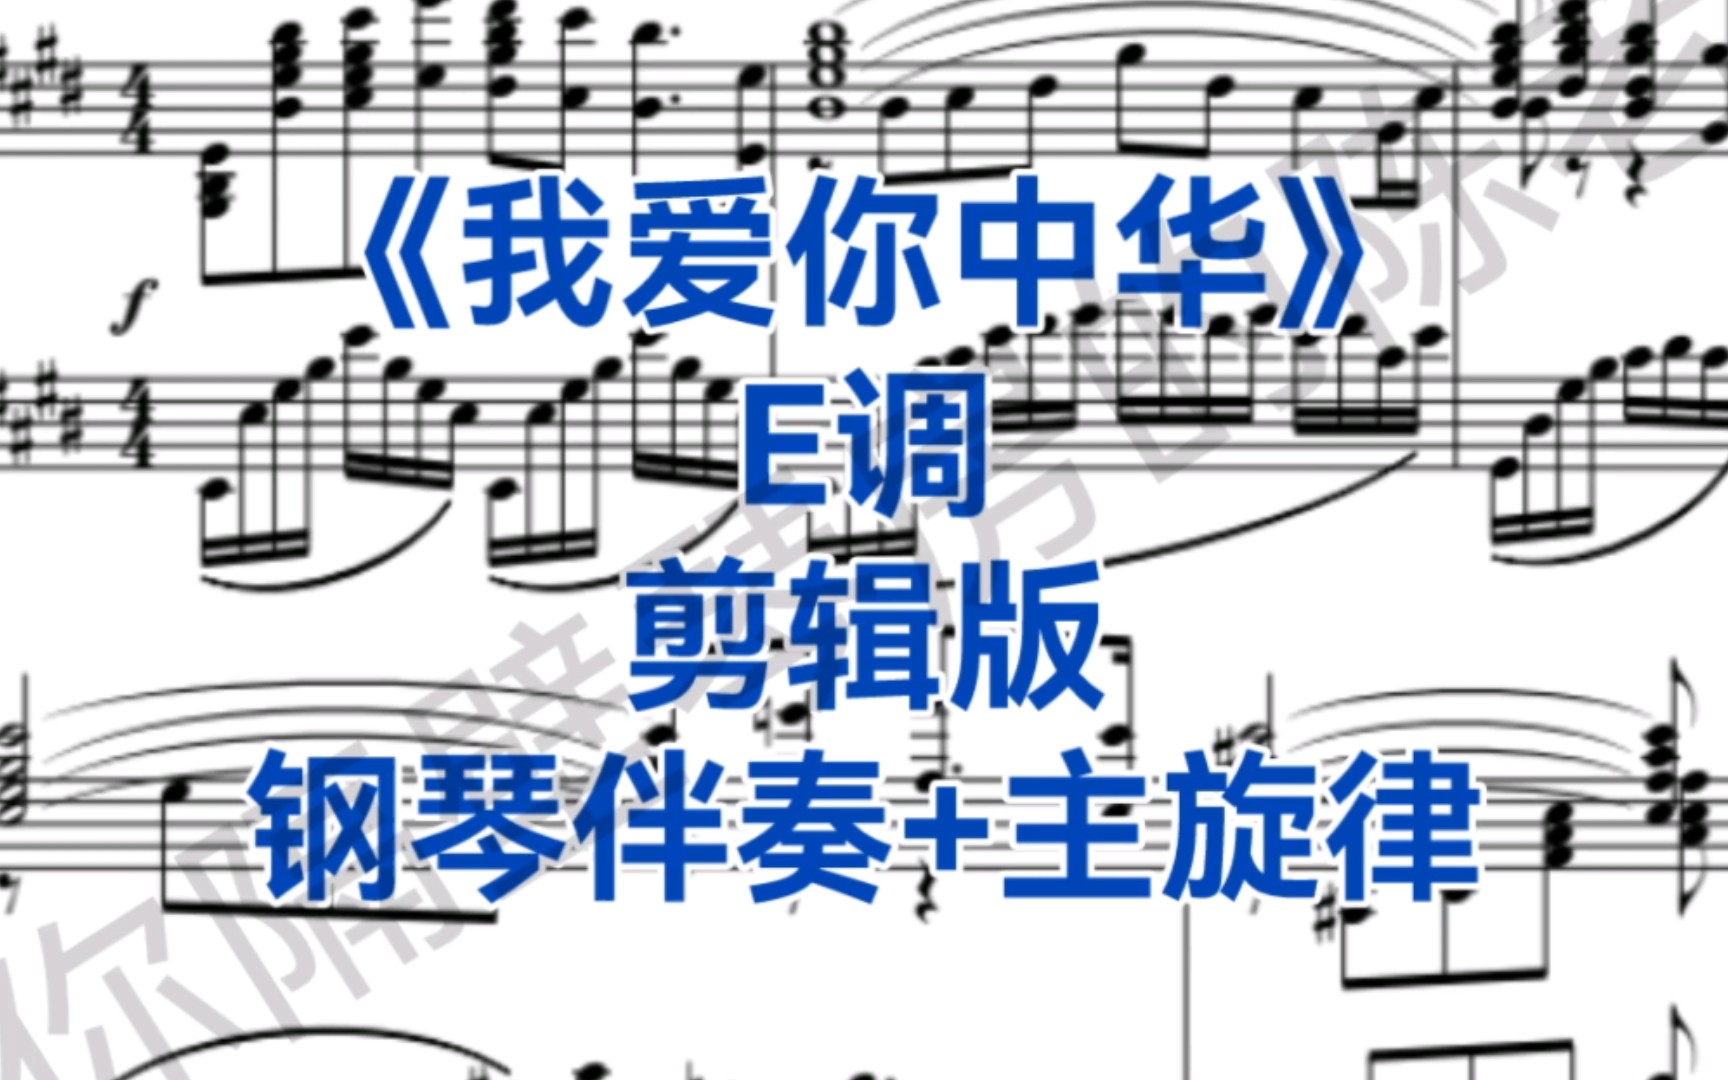 考试剪辑版《我爱你中华》e调钢琴伴奏 主旋律,适用于男高音,女高音